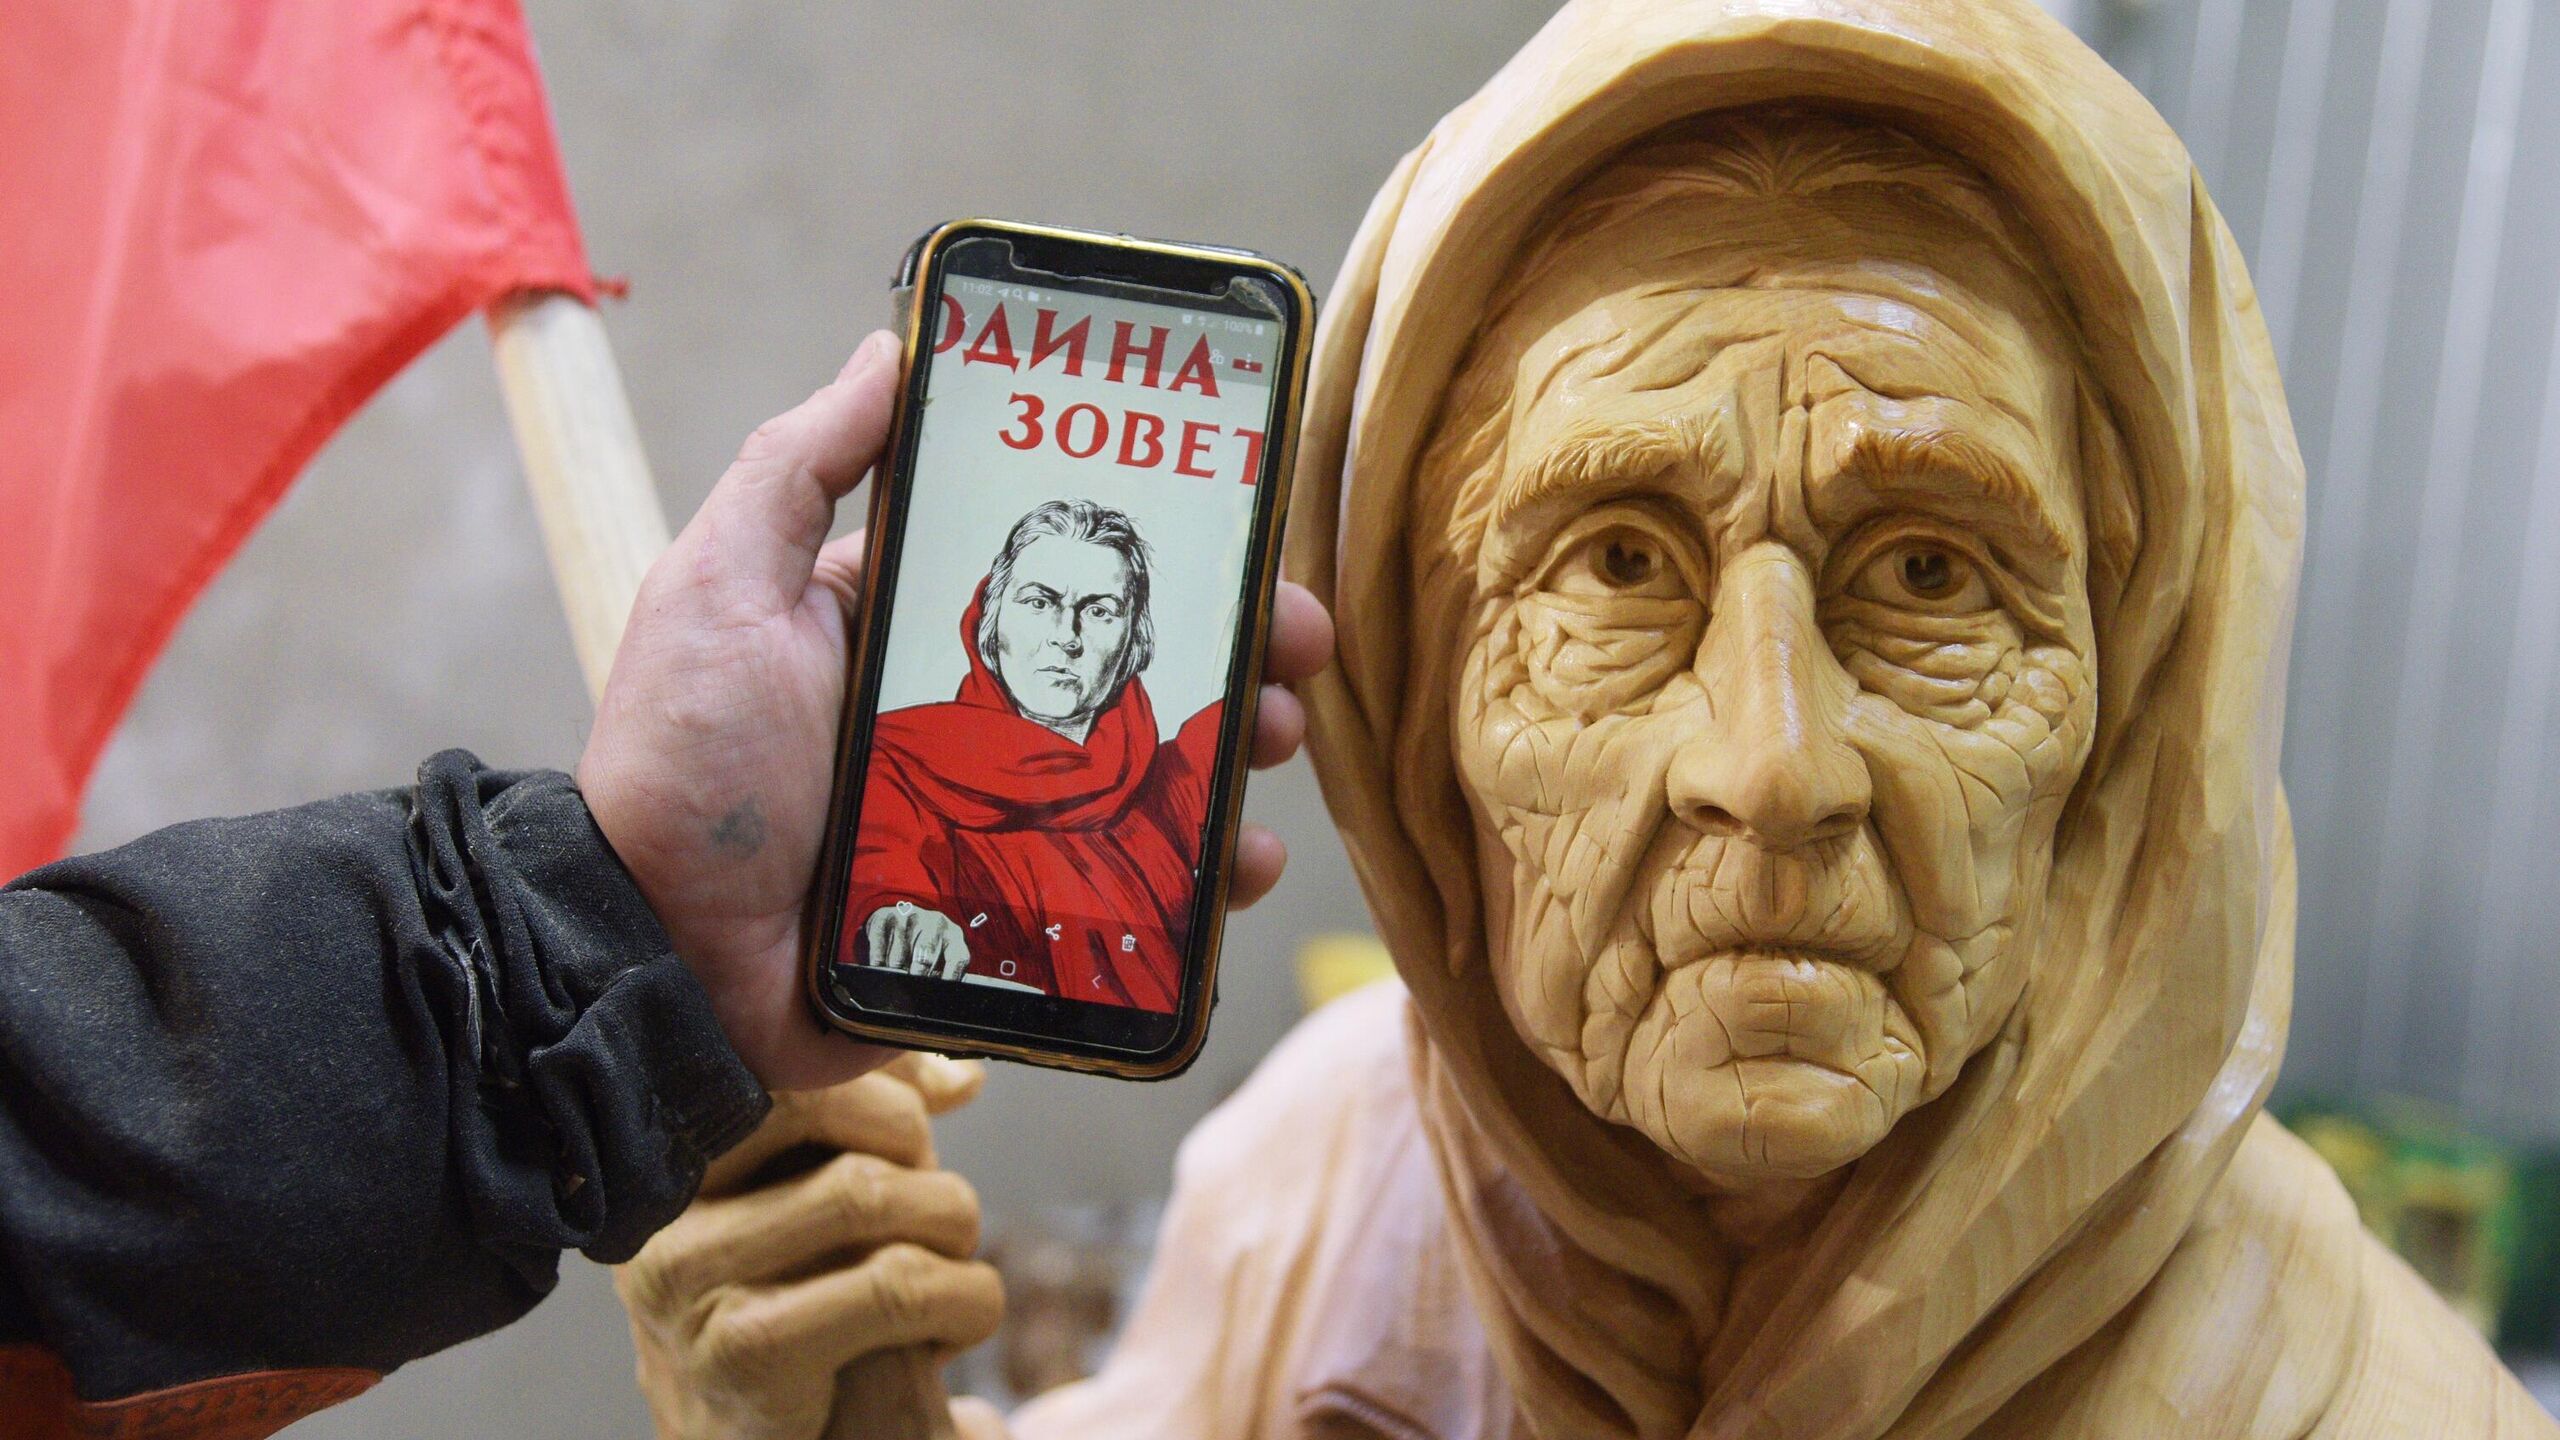 Patung nenek Ukraina dengan bendera Uni Soviet dibawa ke Museum Voronezh